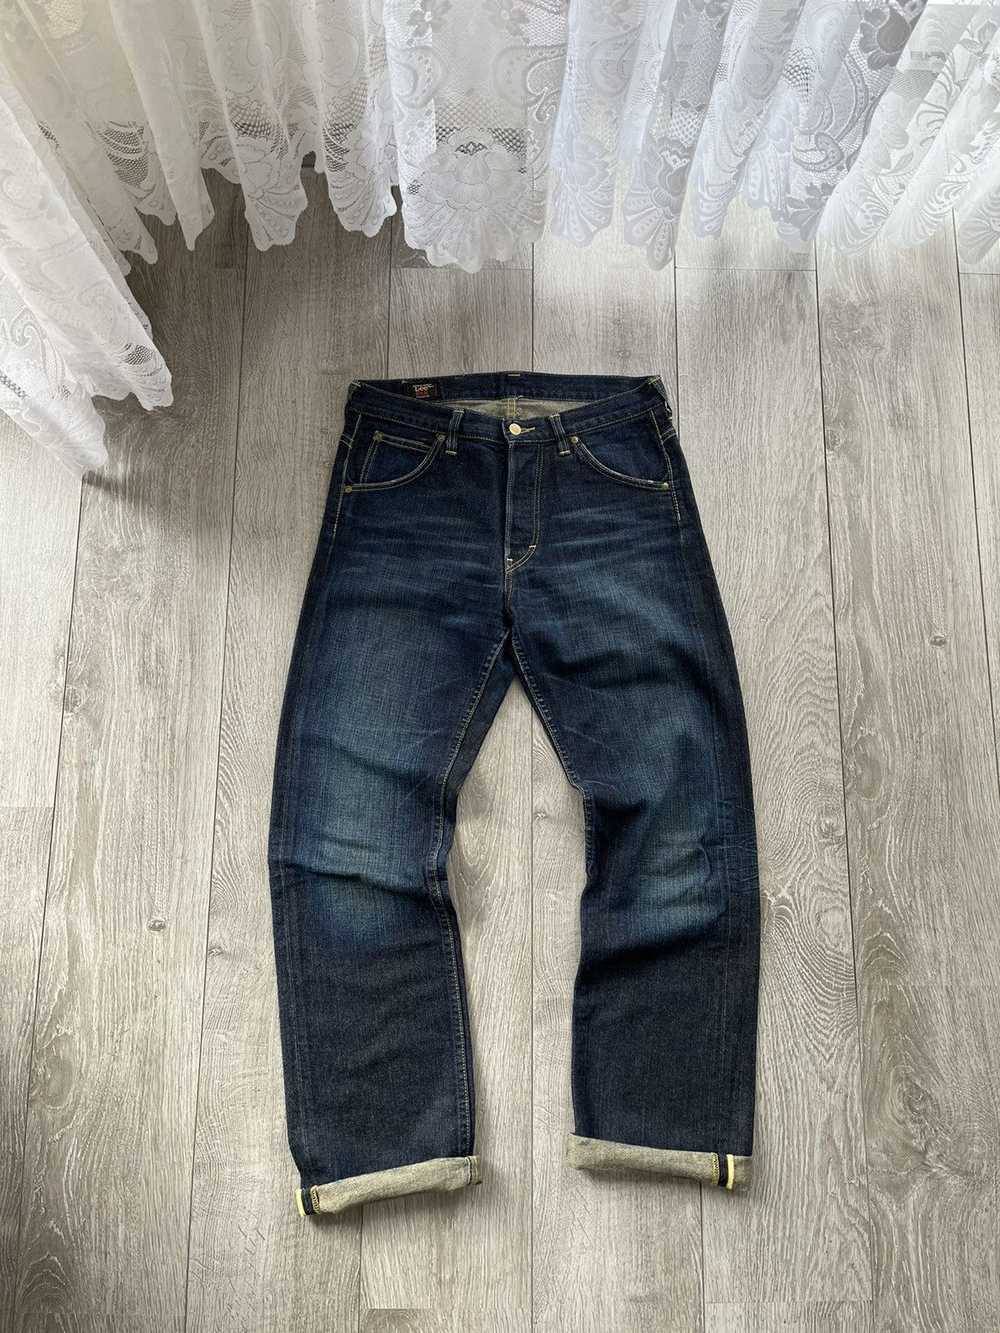 Avant Garde × Lee × Vintage Lee 101 B jeans pants… - image 1